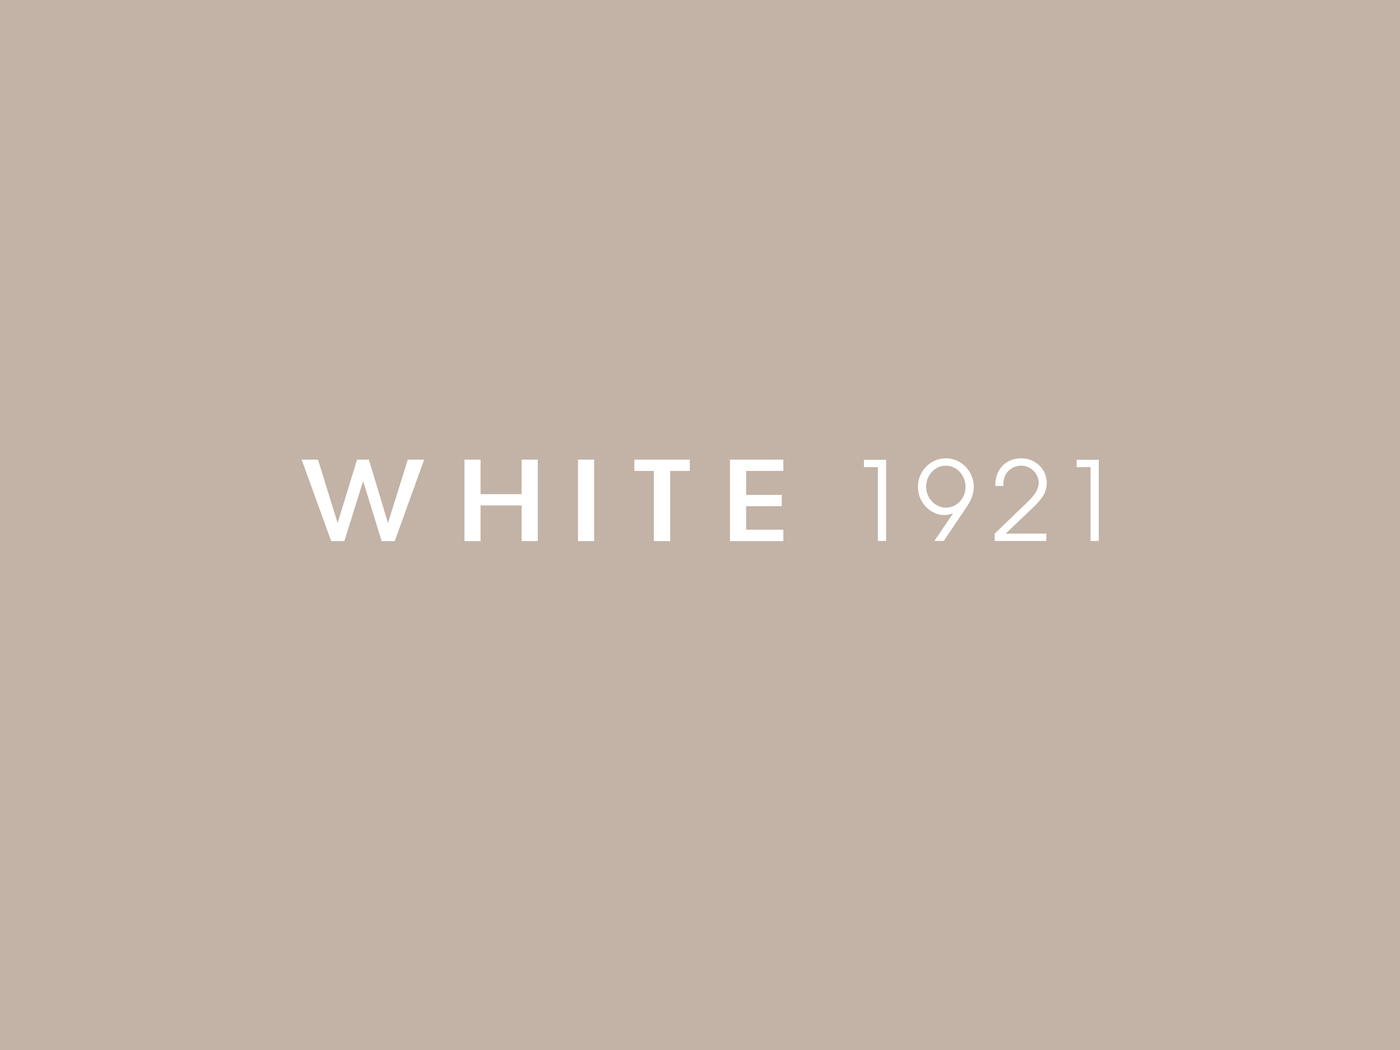 White 1921 - Un design pensé par l’agence de design de Paris Partisan du Sens.